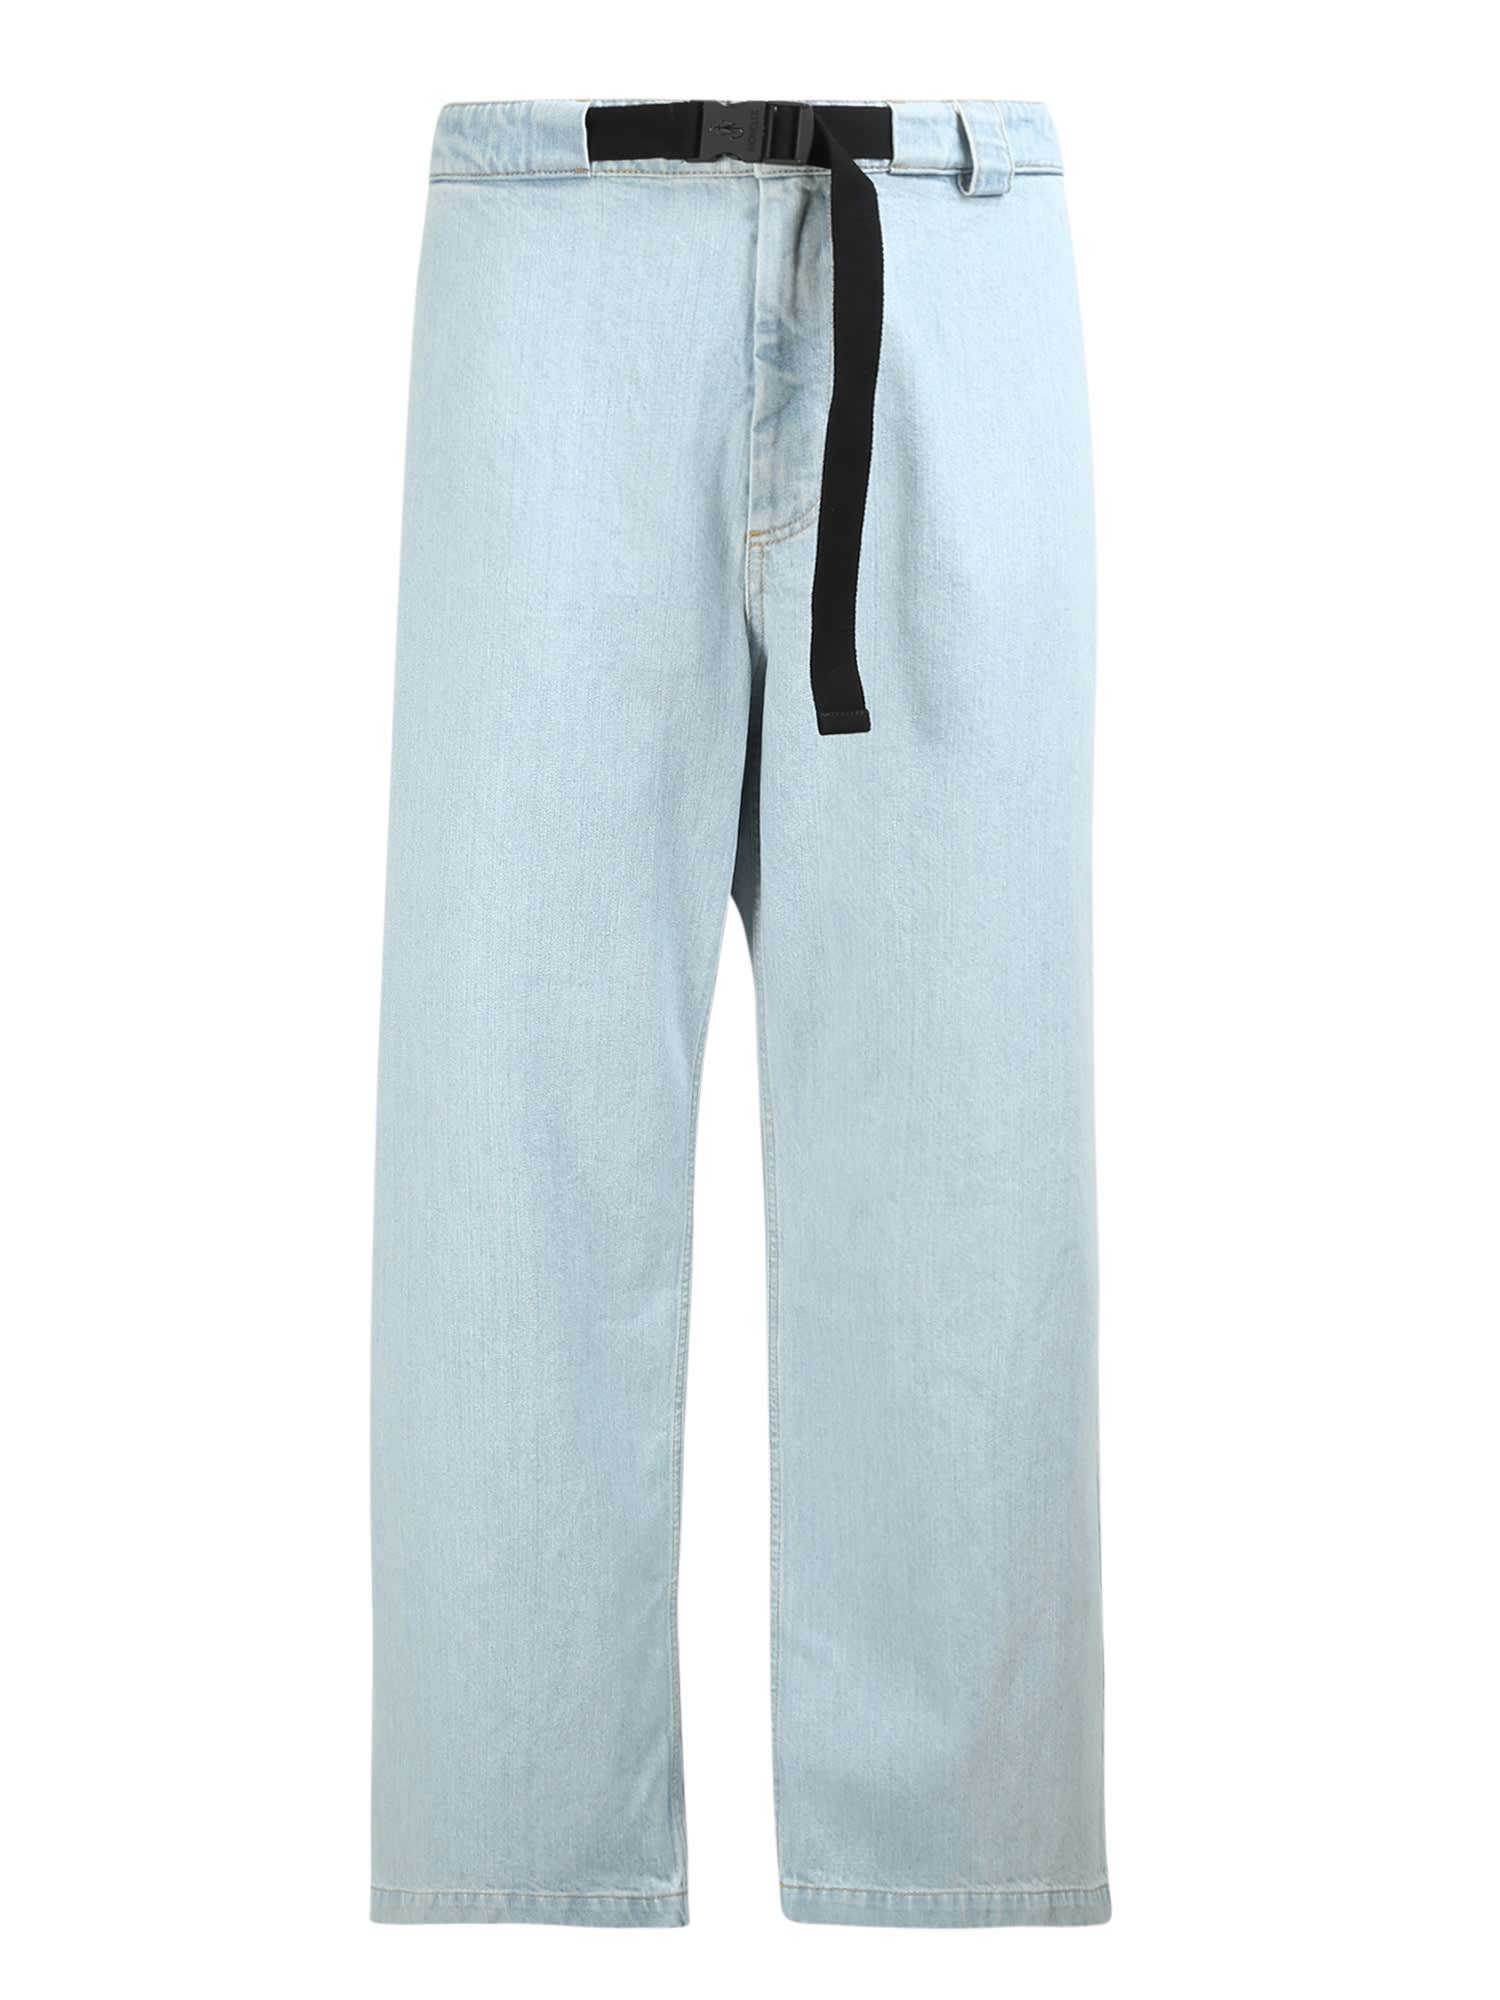 Moncler Genius Bleached Jeans - Moncler Jw Anderson